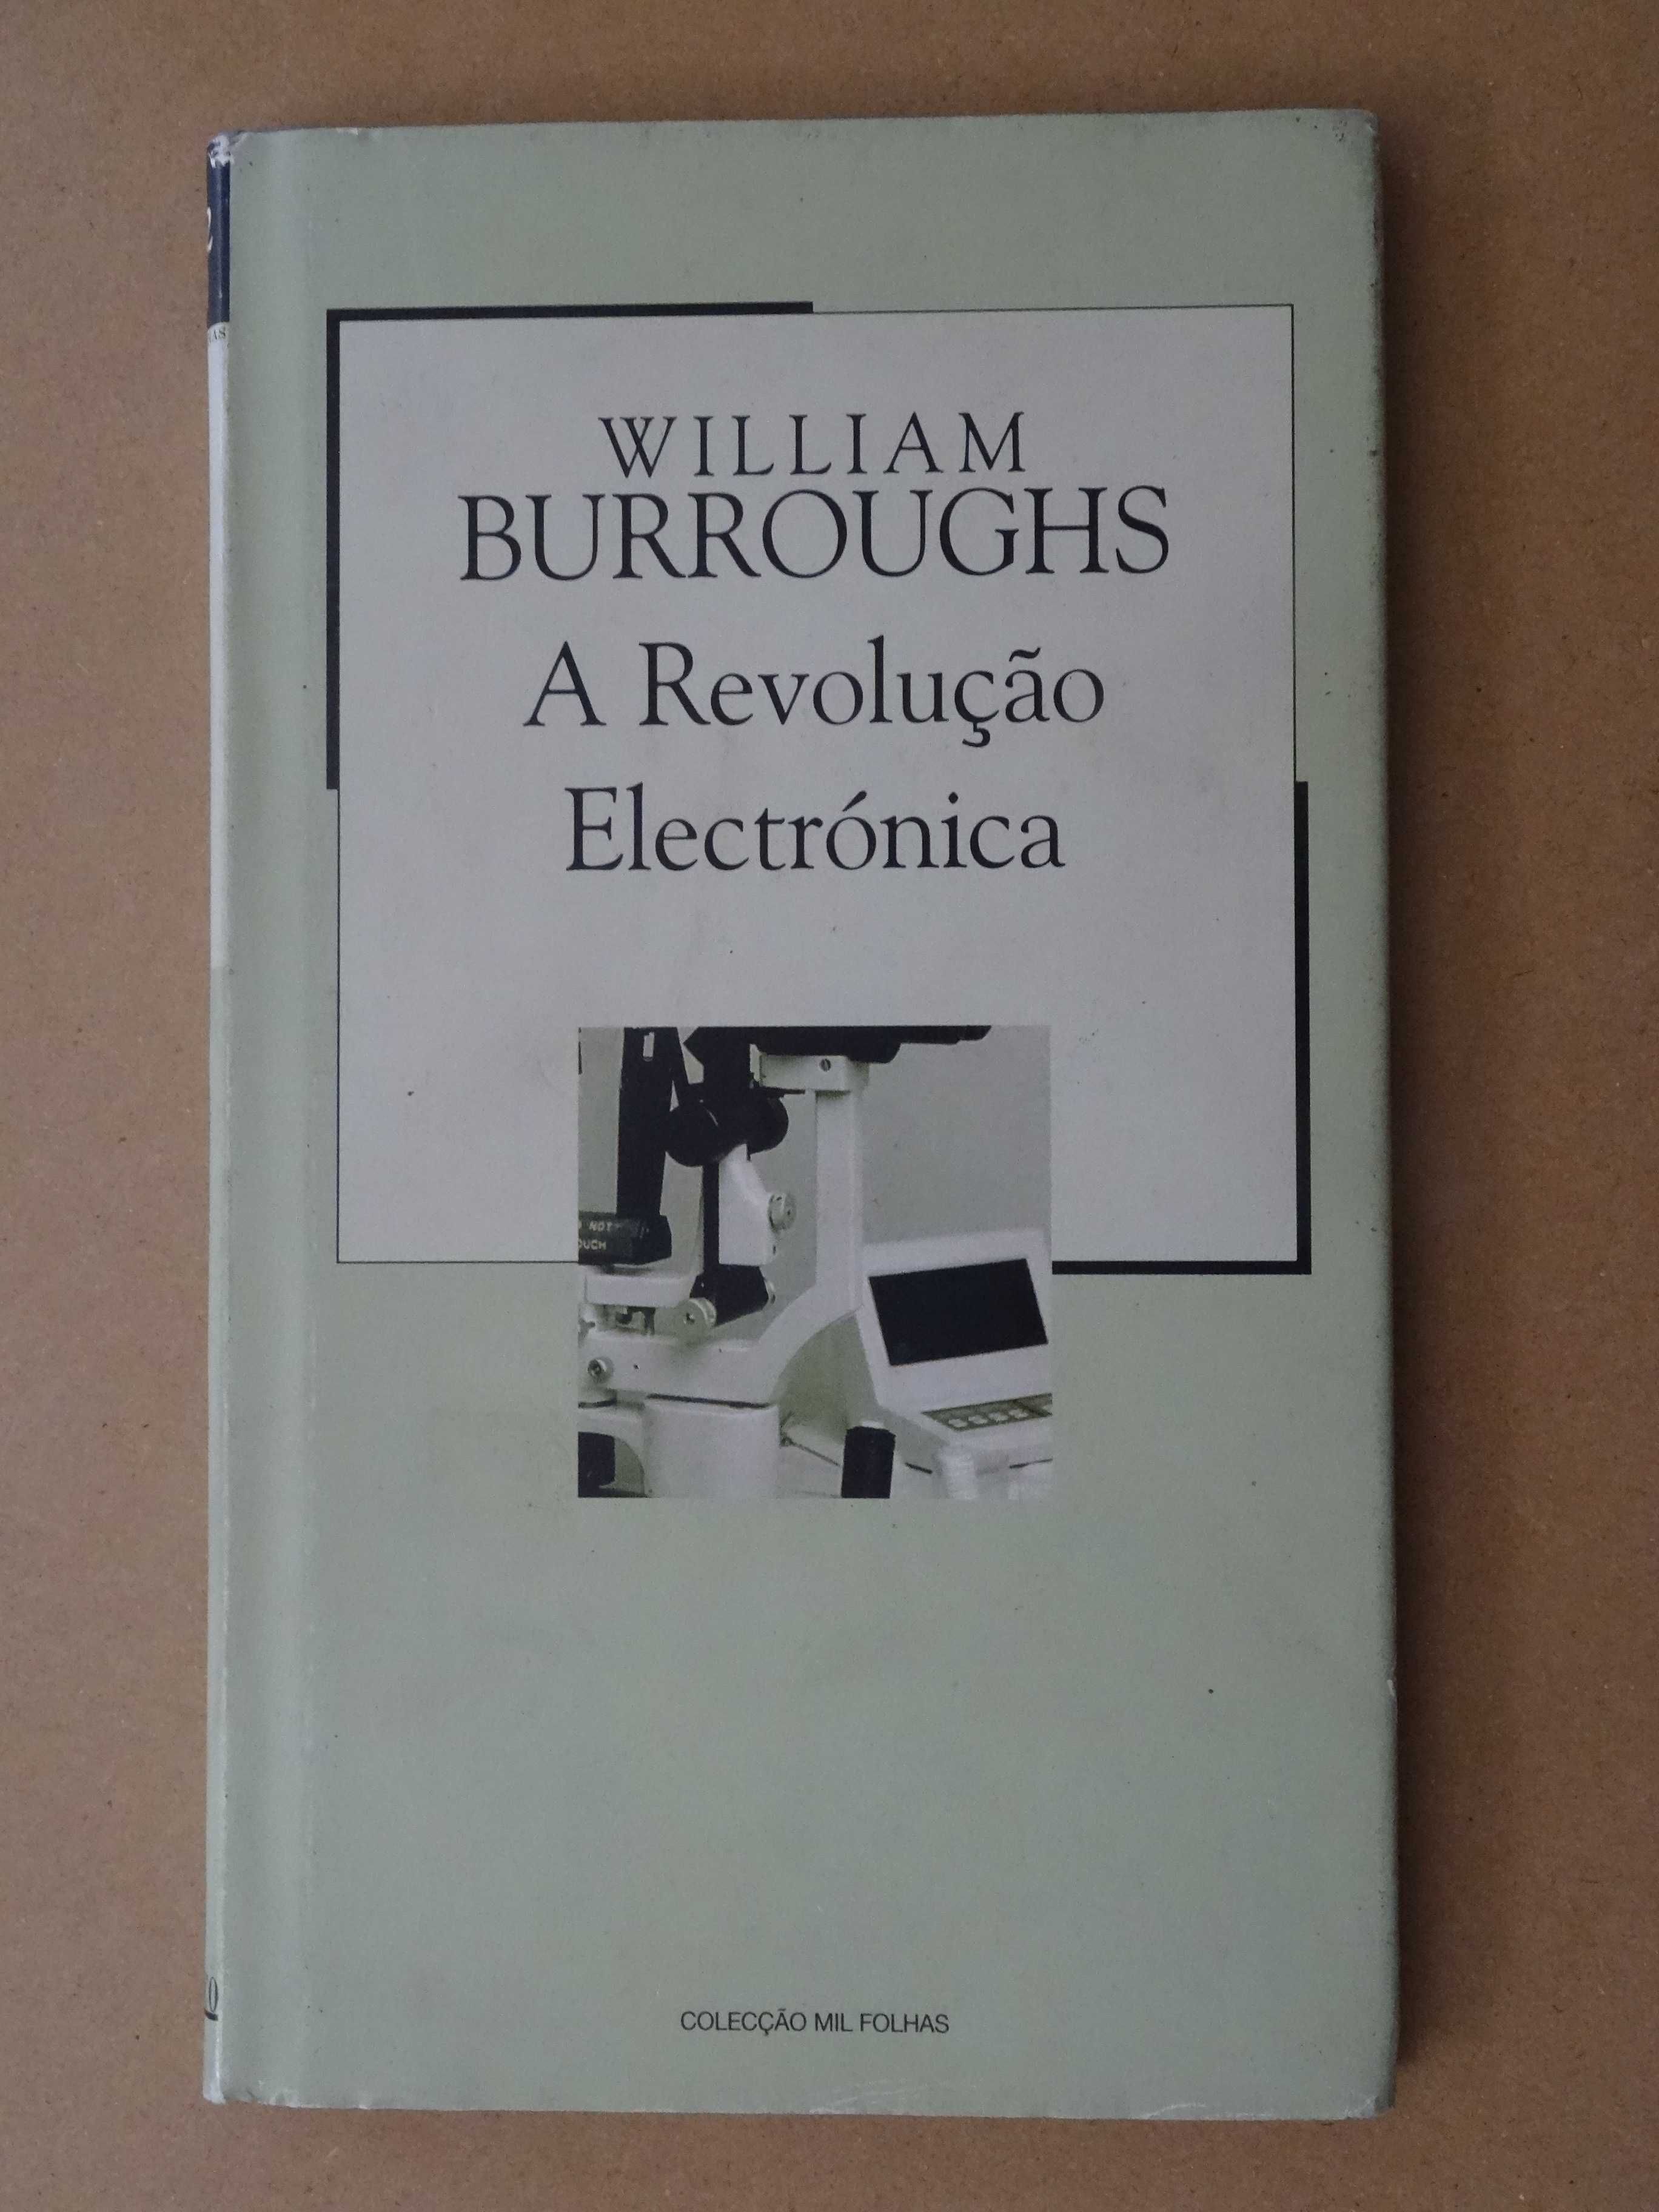 A Revolução Electrónica de William Burroughs